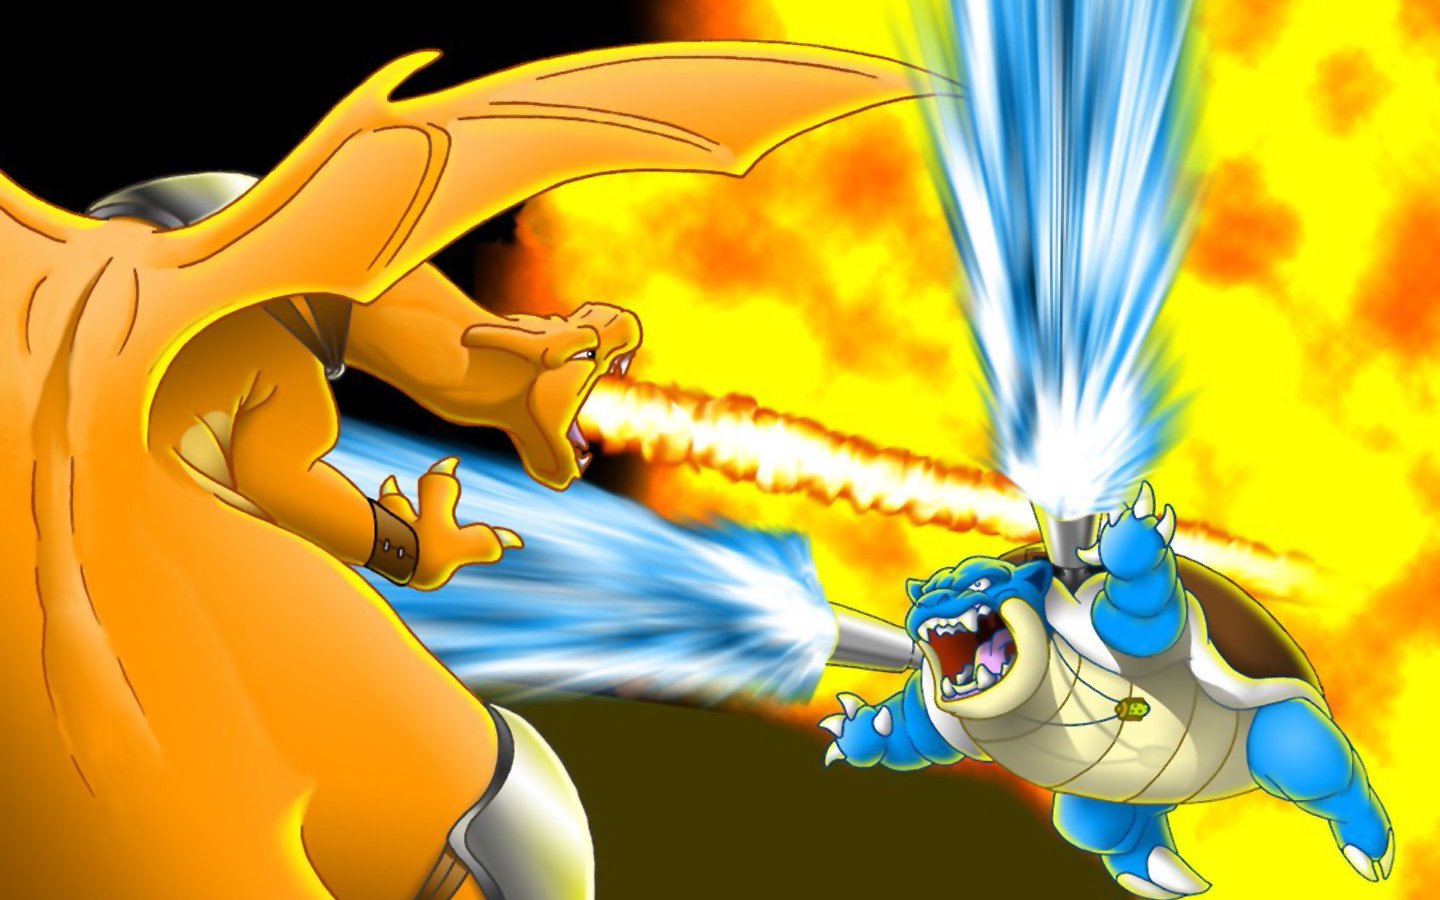 Pokemon Yellow Blastoise Battles Charizard Wallpaper